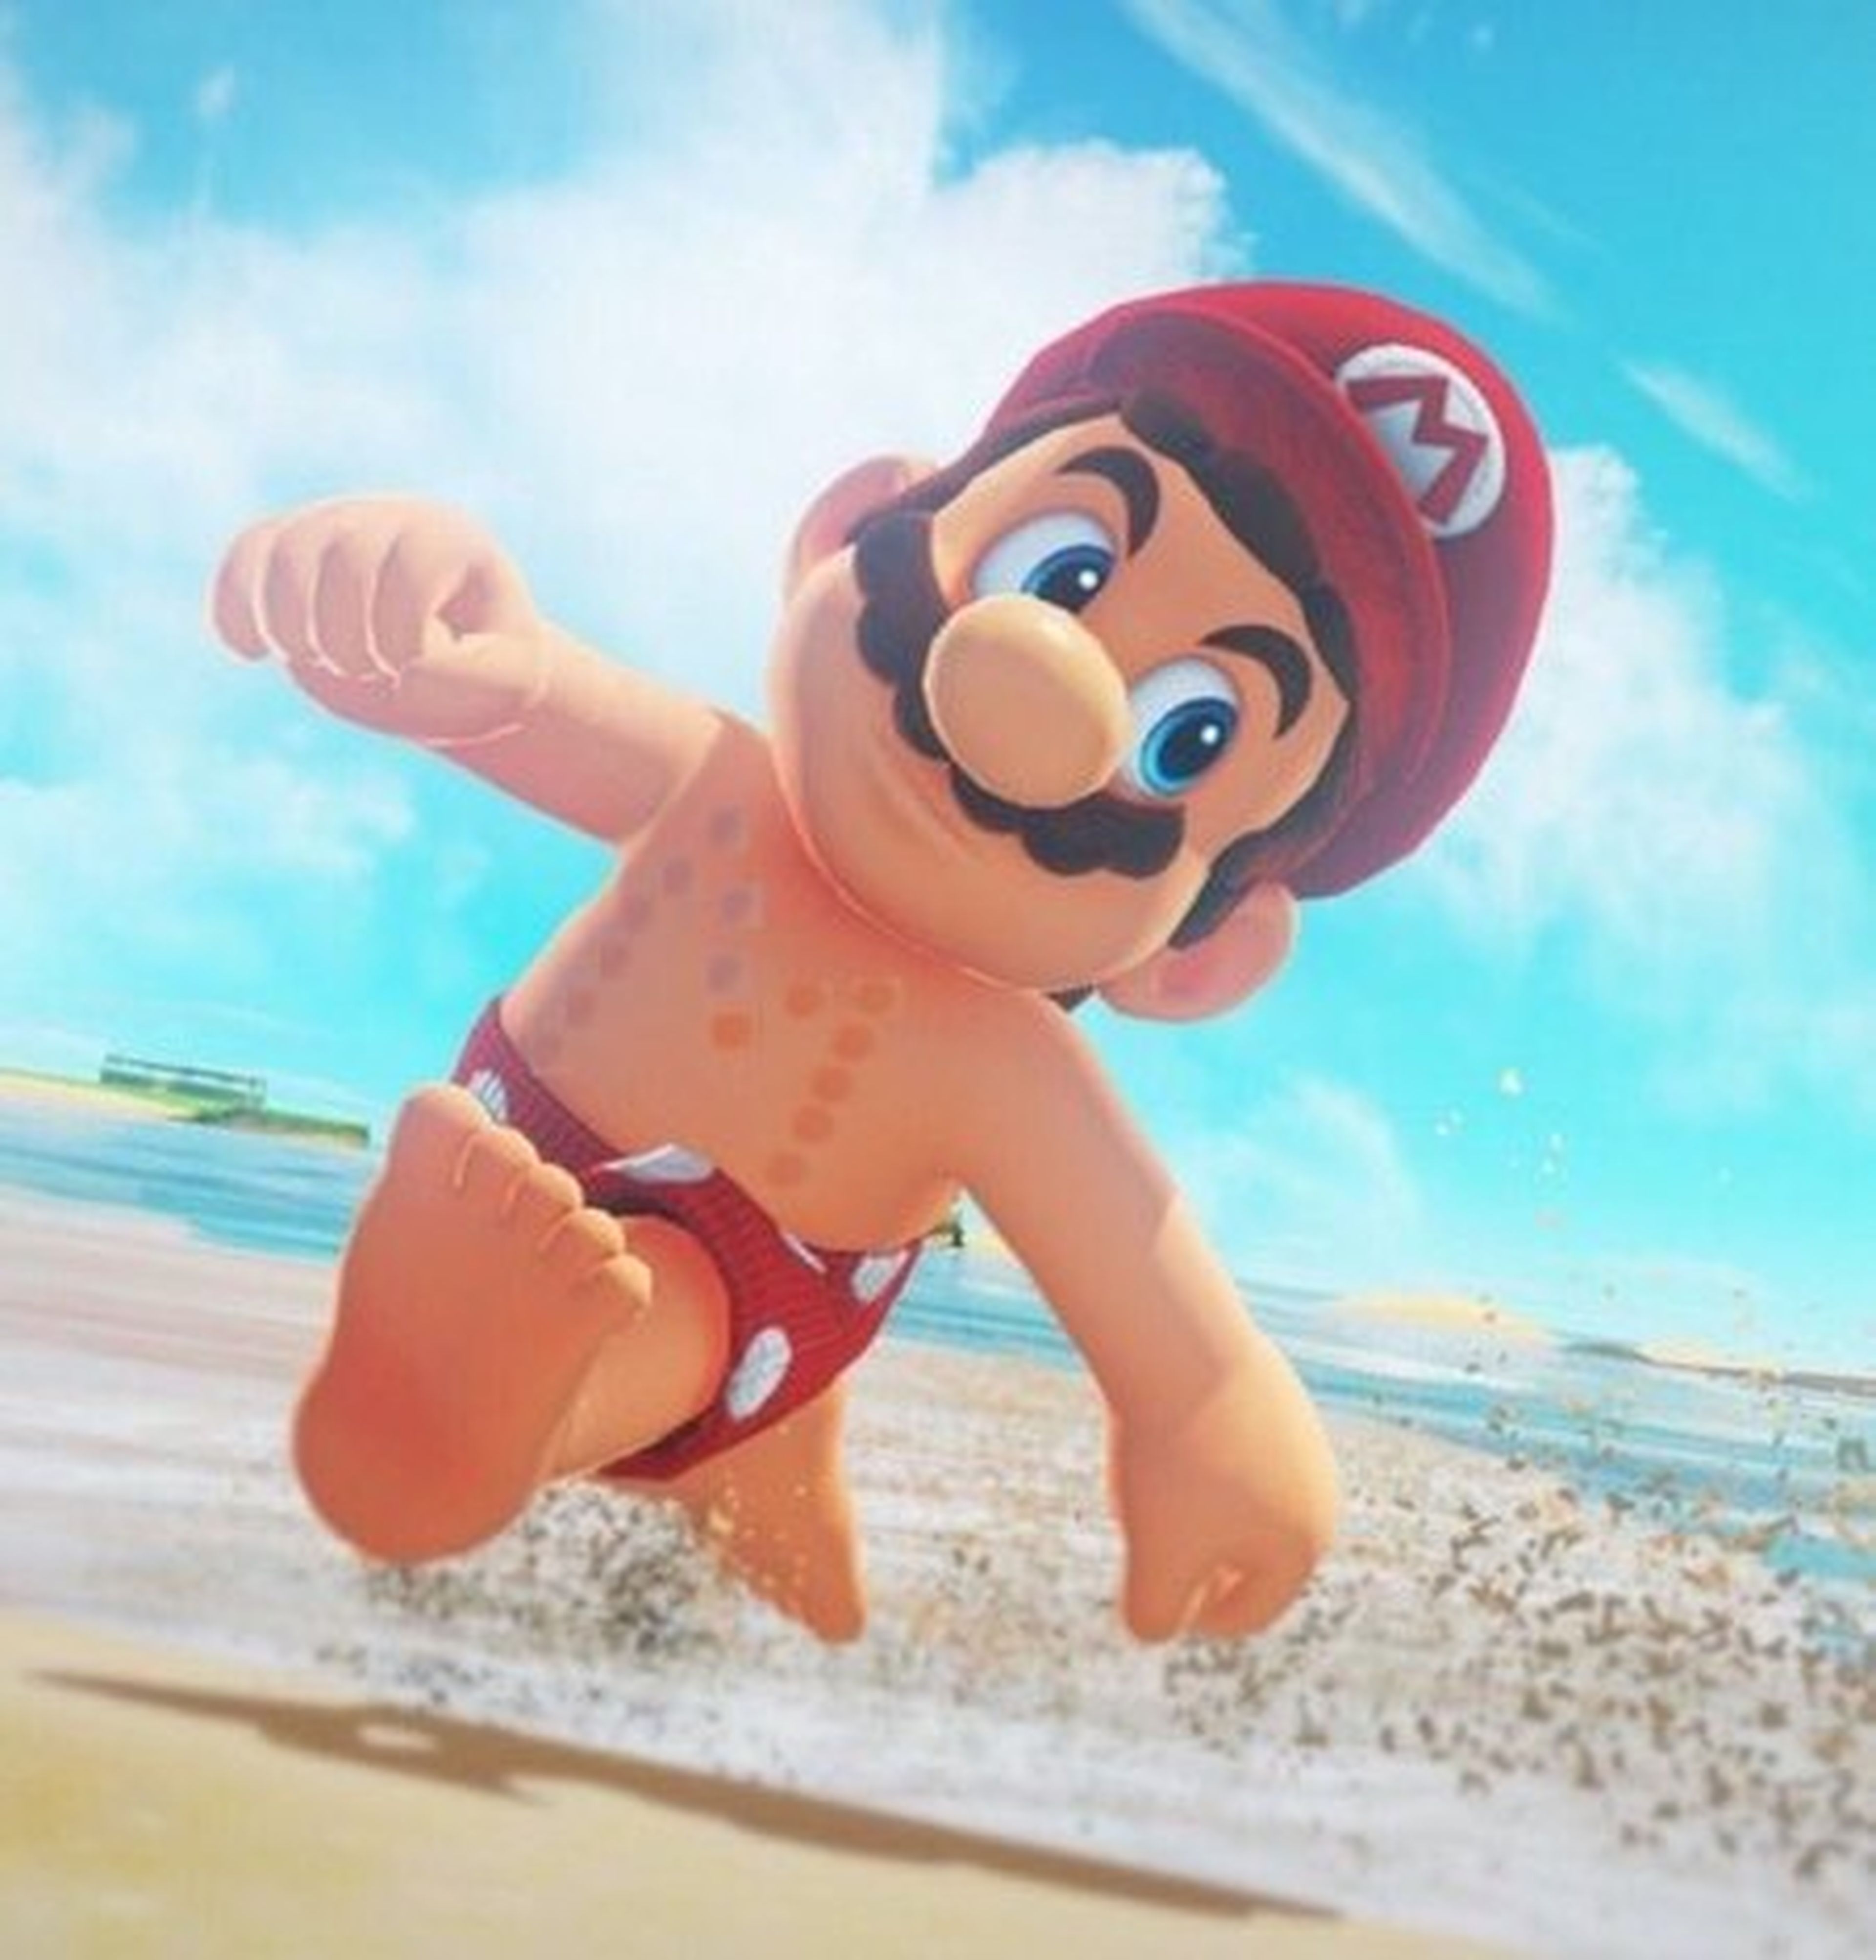 Los pezones de Mario son tendencia